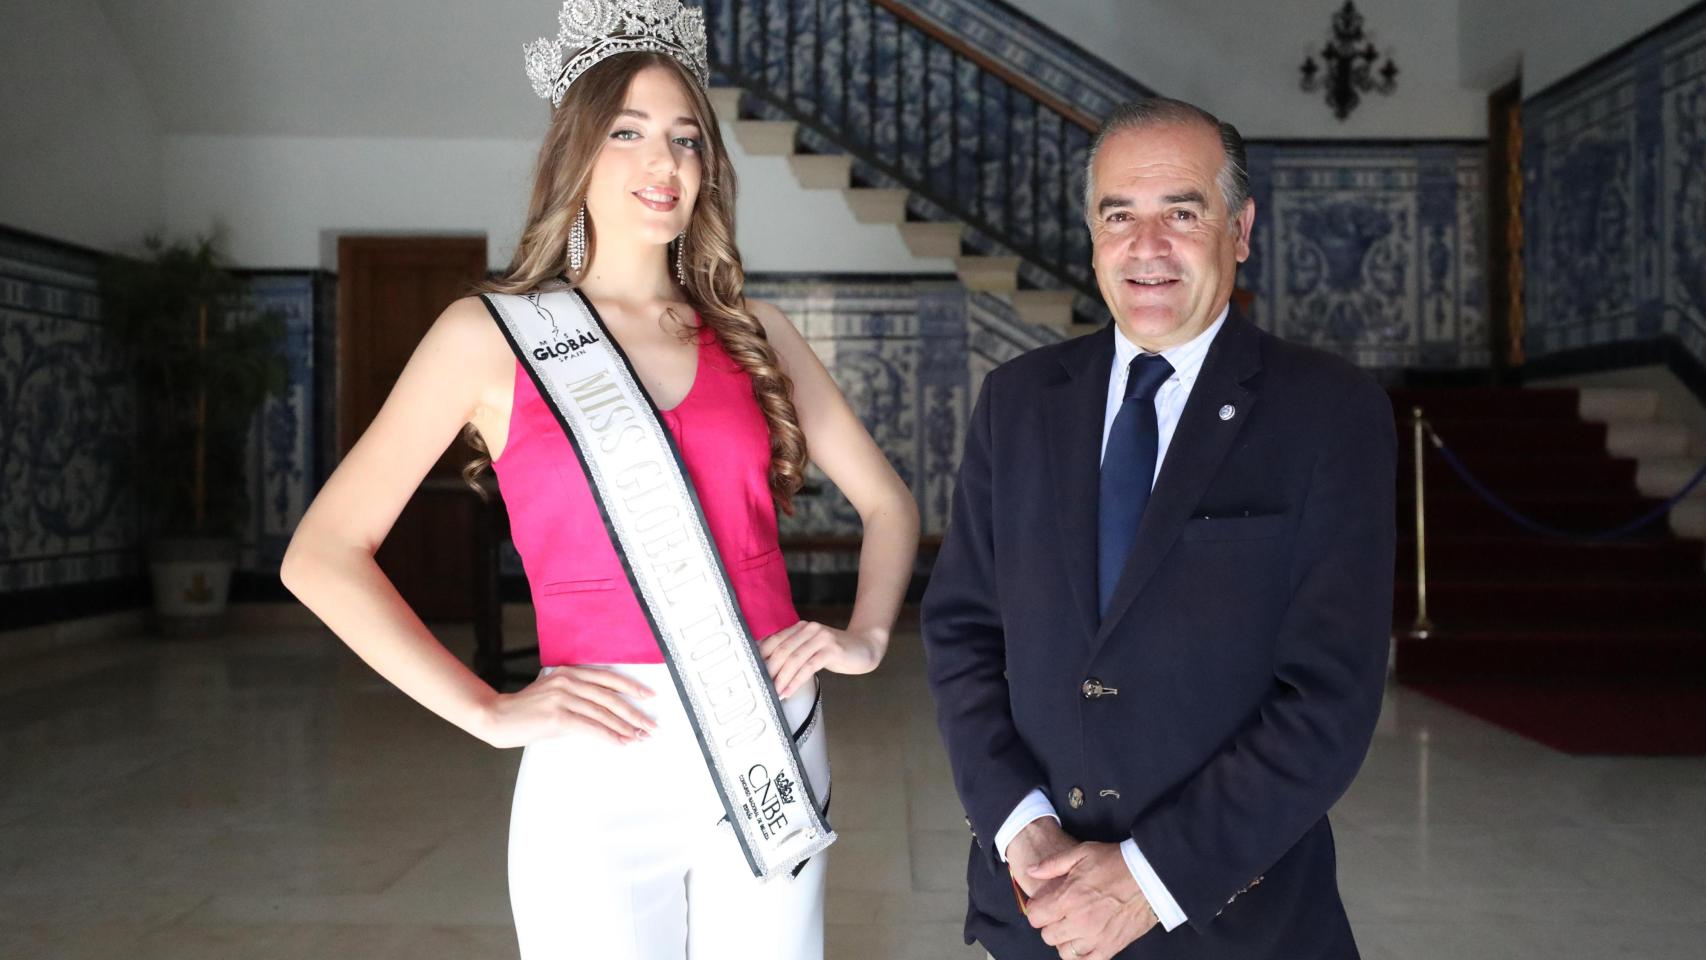 El alcalde de Talavera de la Reina recibe a Miss Global Toledo